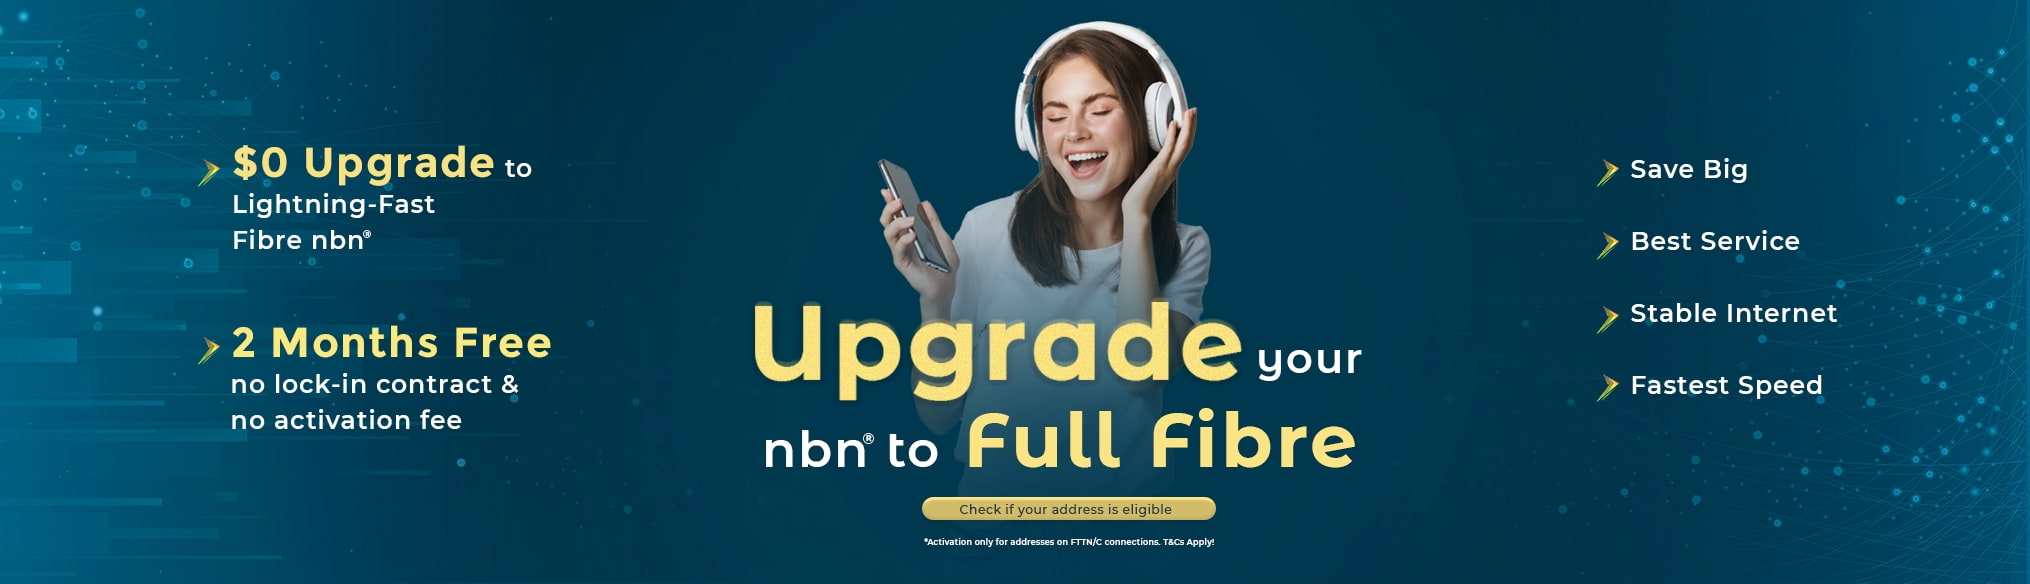 fttp_upgrade_nbn_en